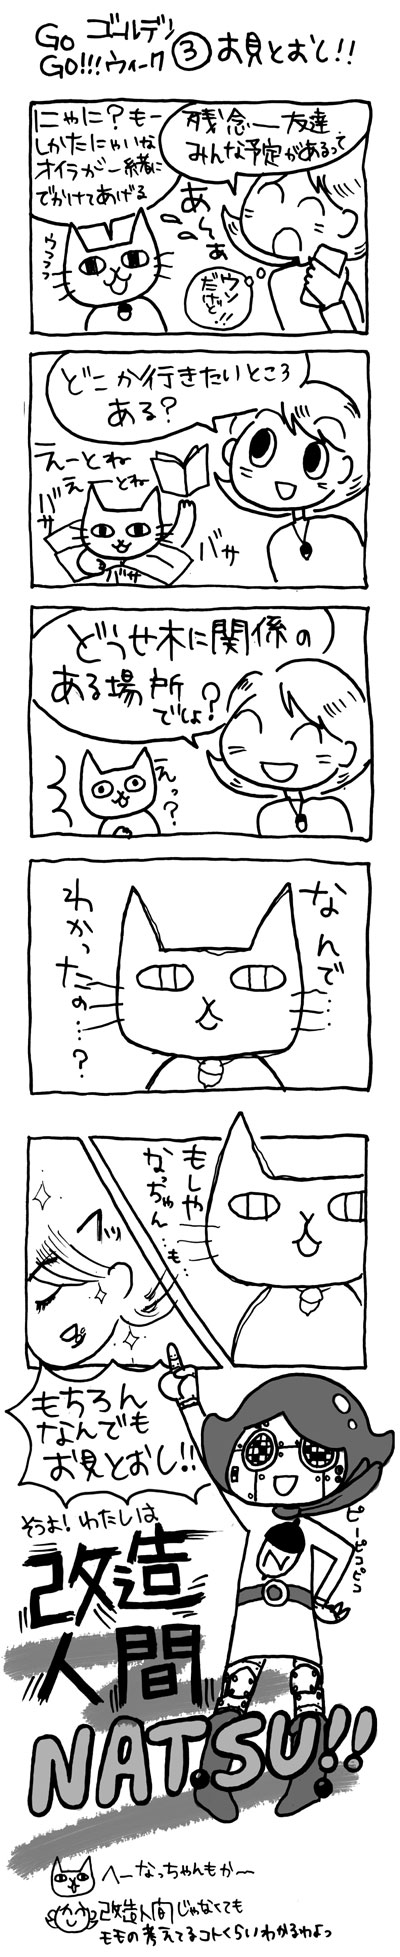 木工漫画　Go Go!!! ゴールデンウィーク③　お見とおし!!0504